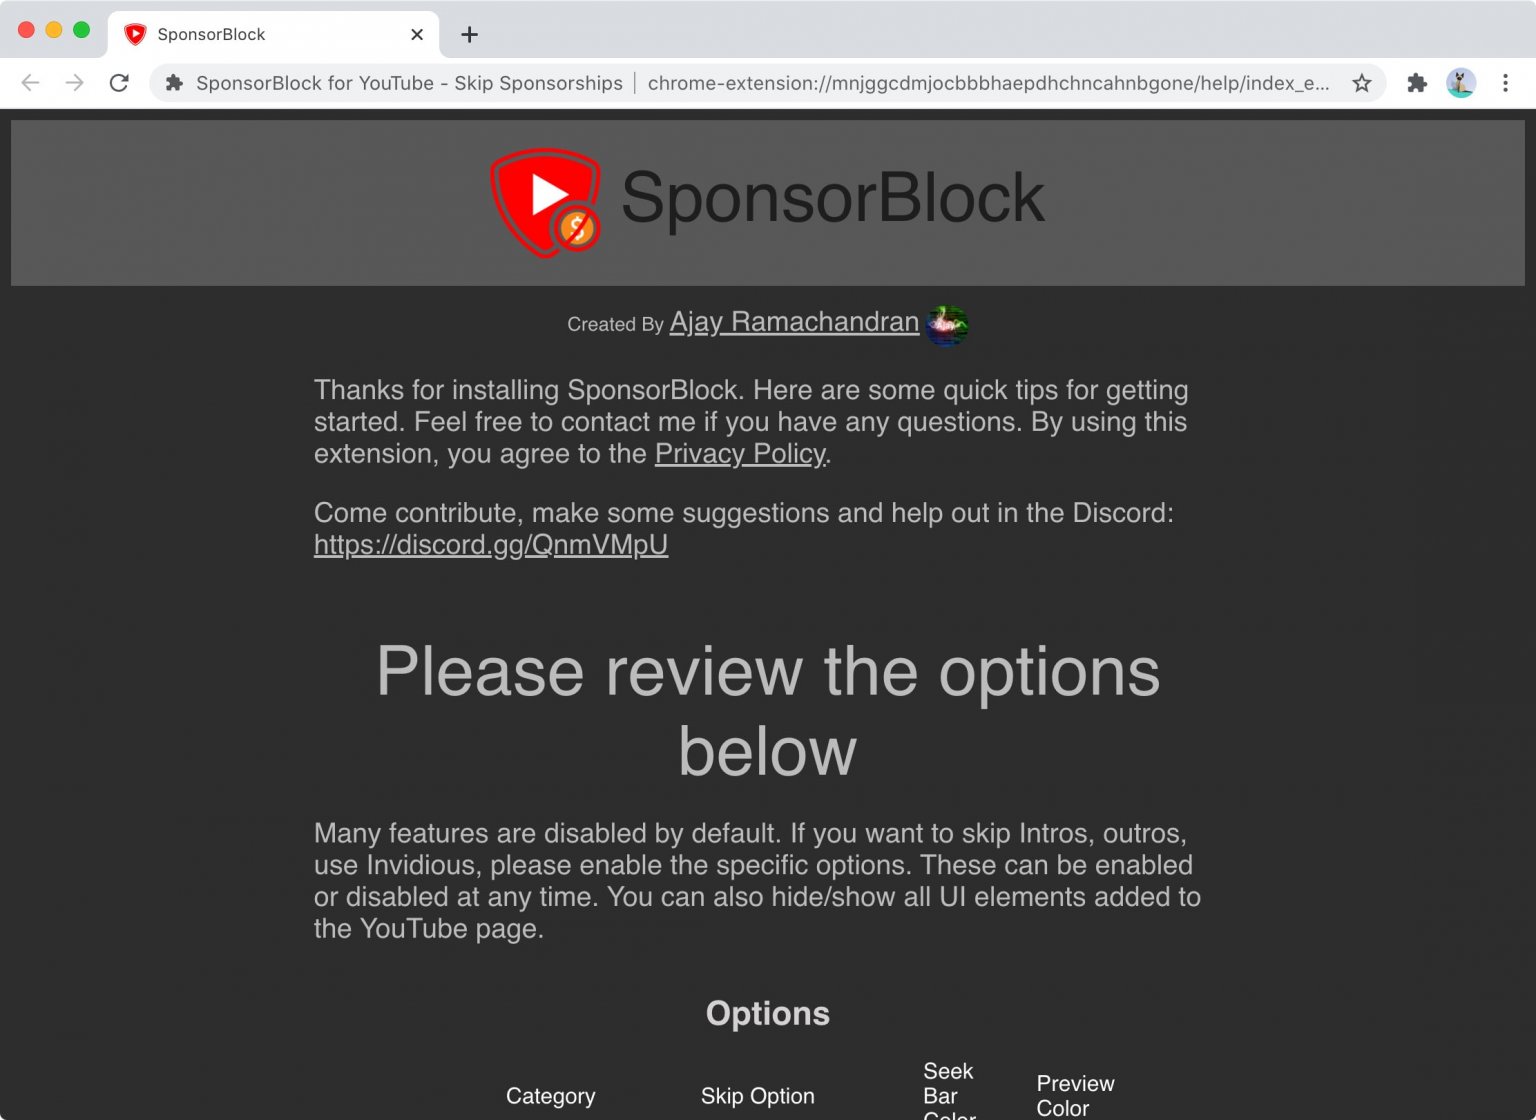 sponsorblock highlight